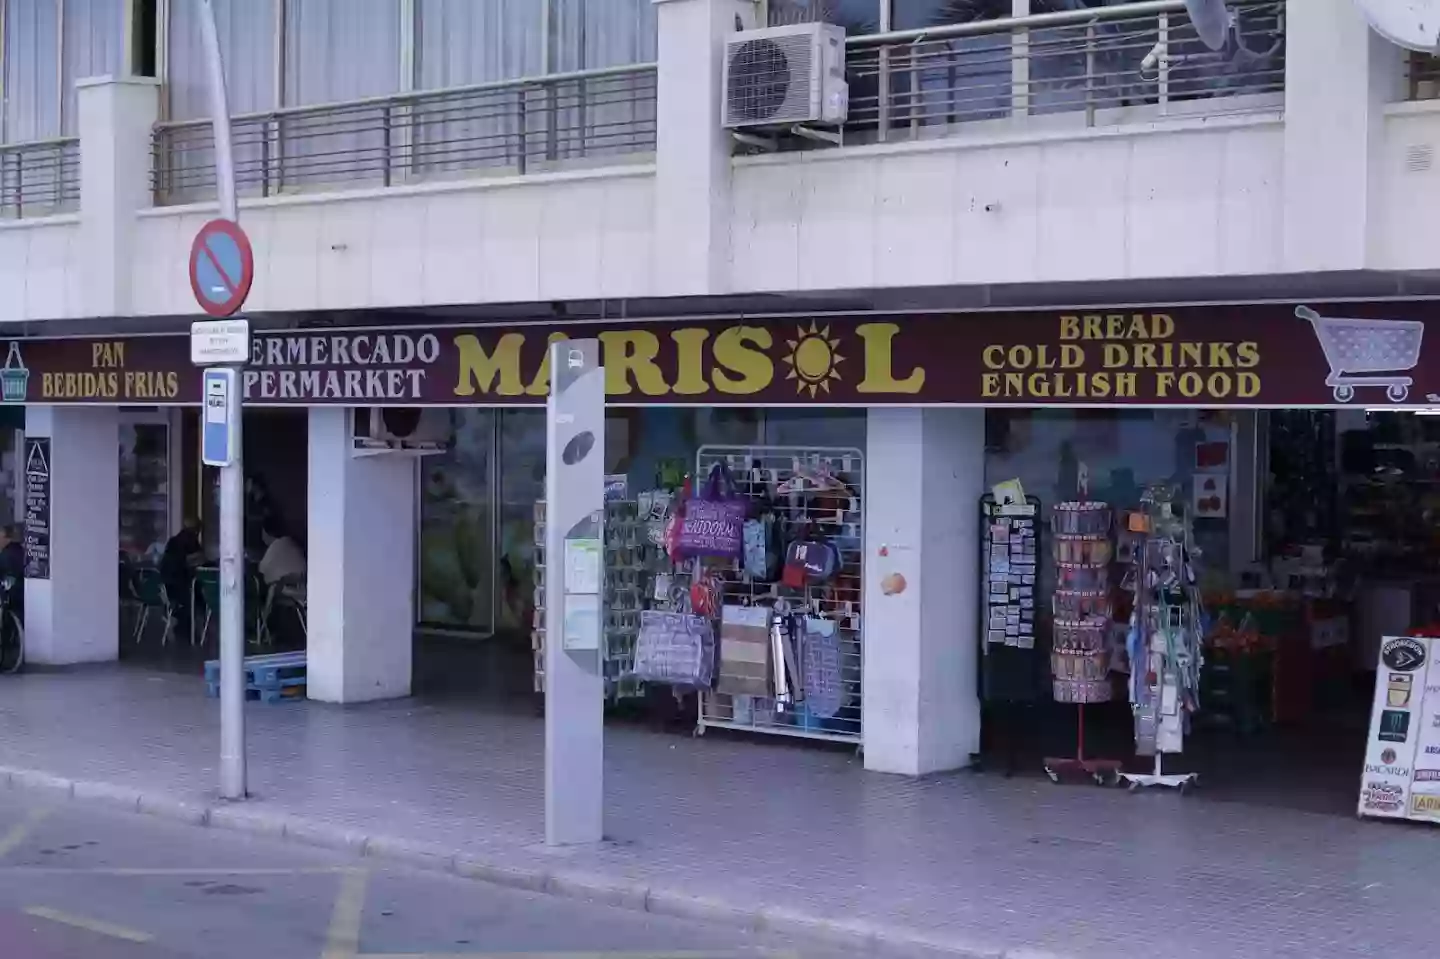 Supermercado Marisol (Armada Española)